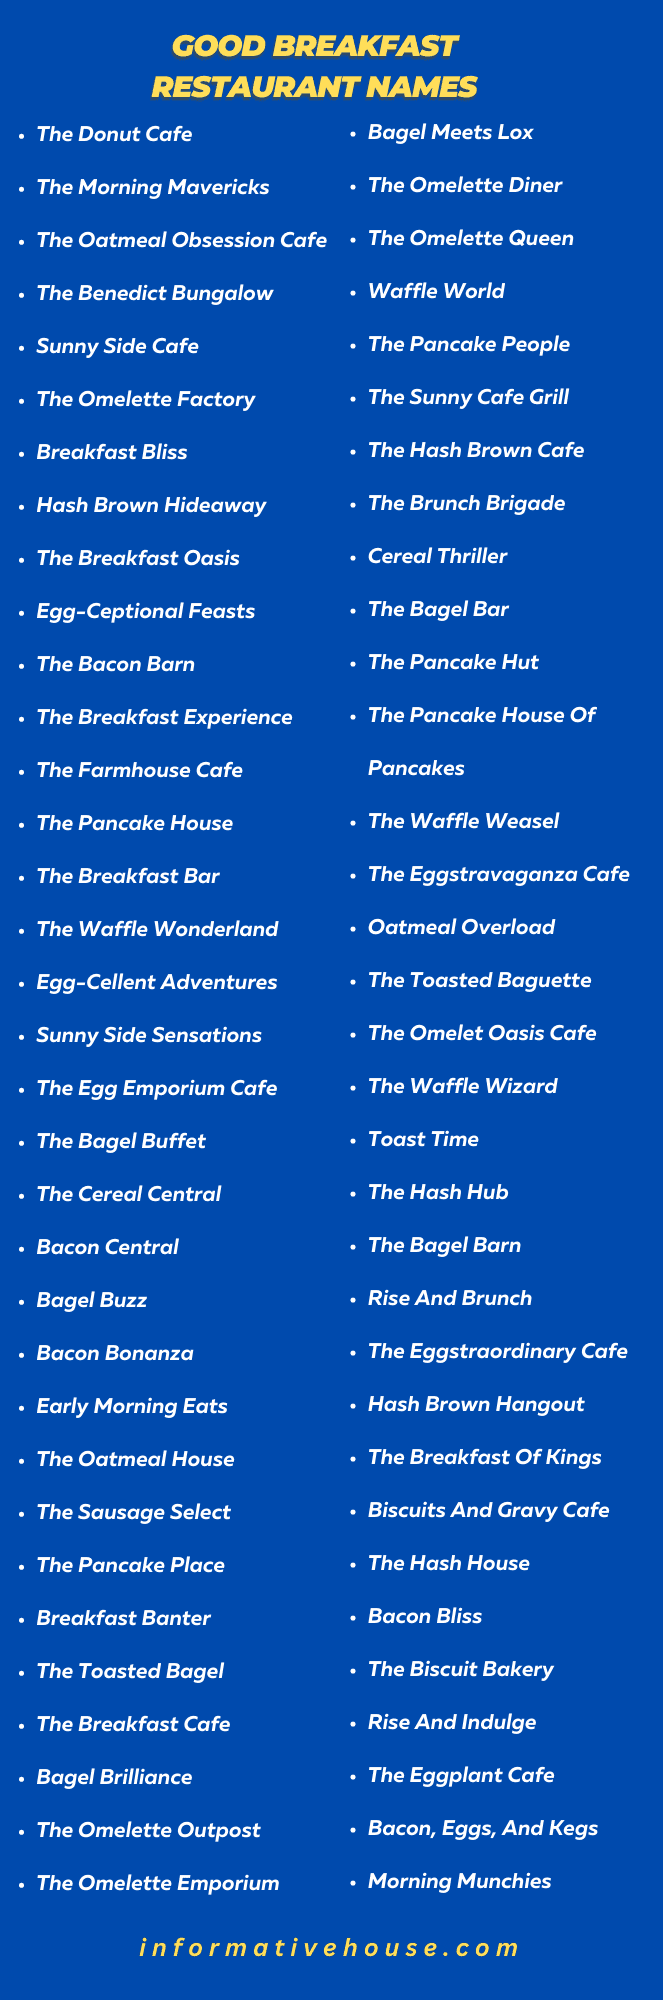 Good Breakfast Restaurant Names